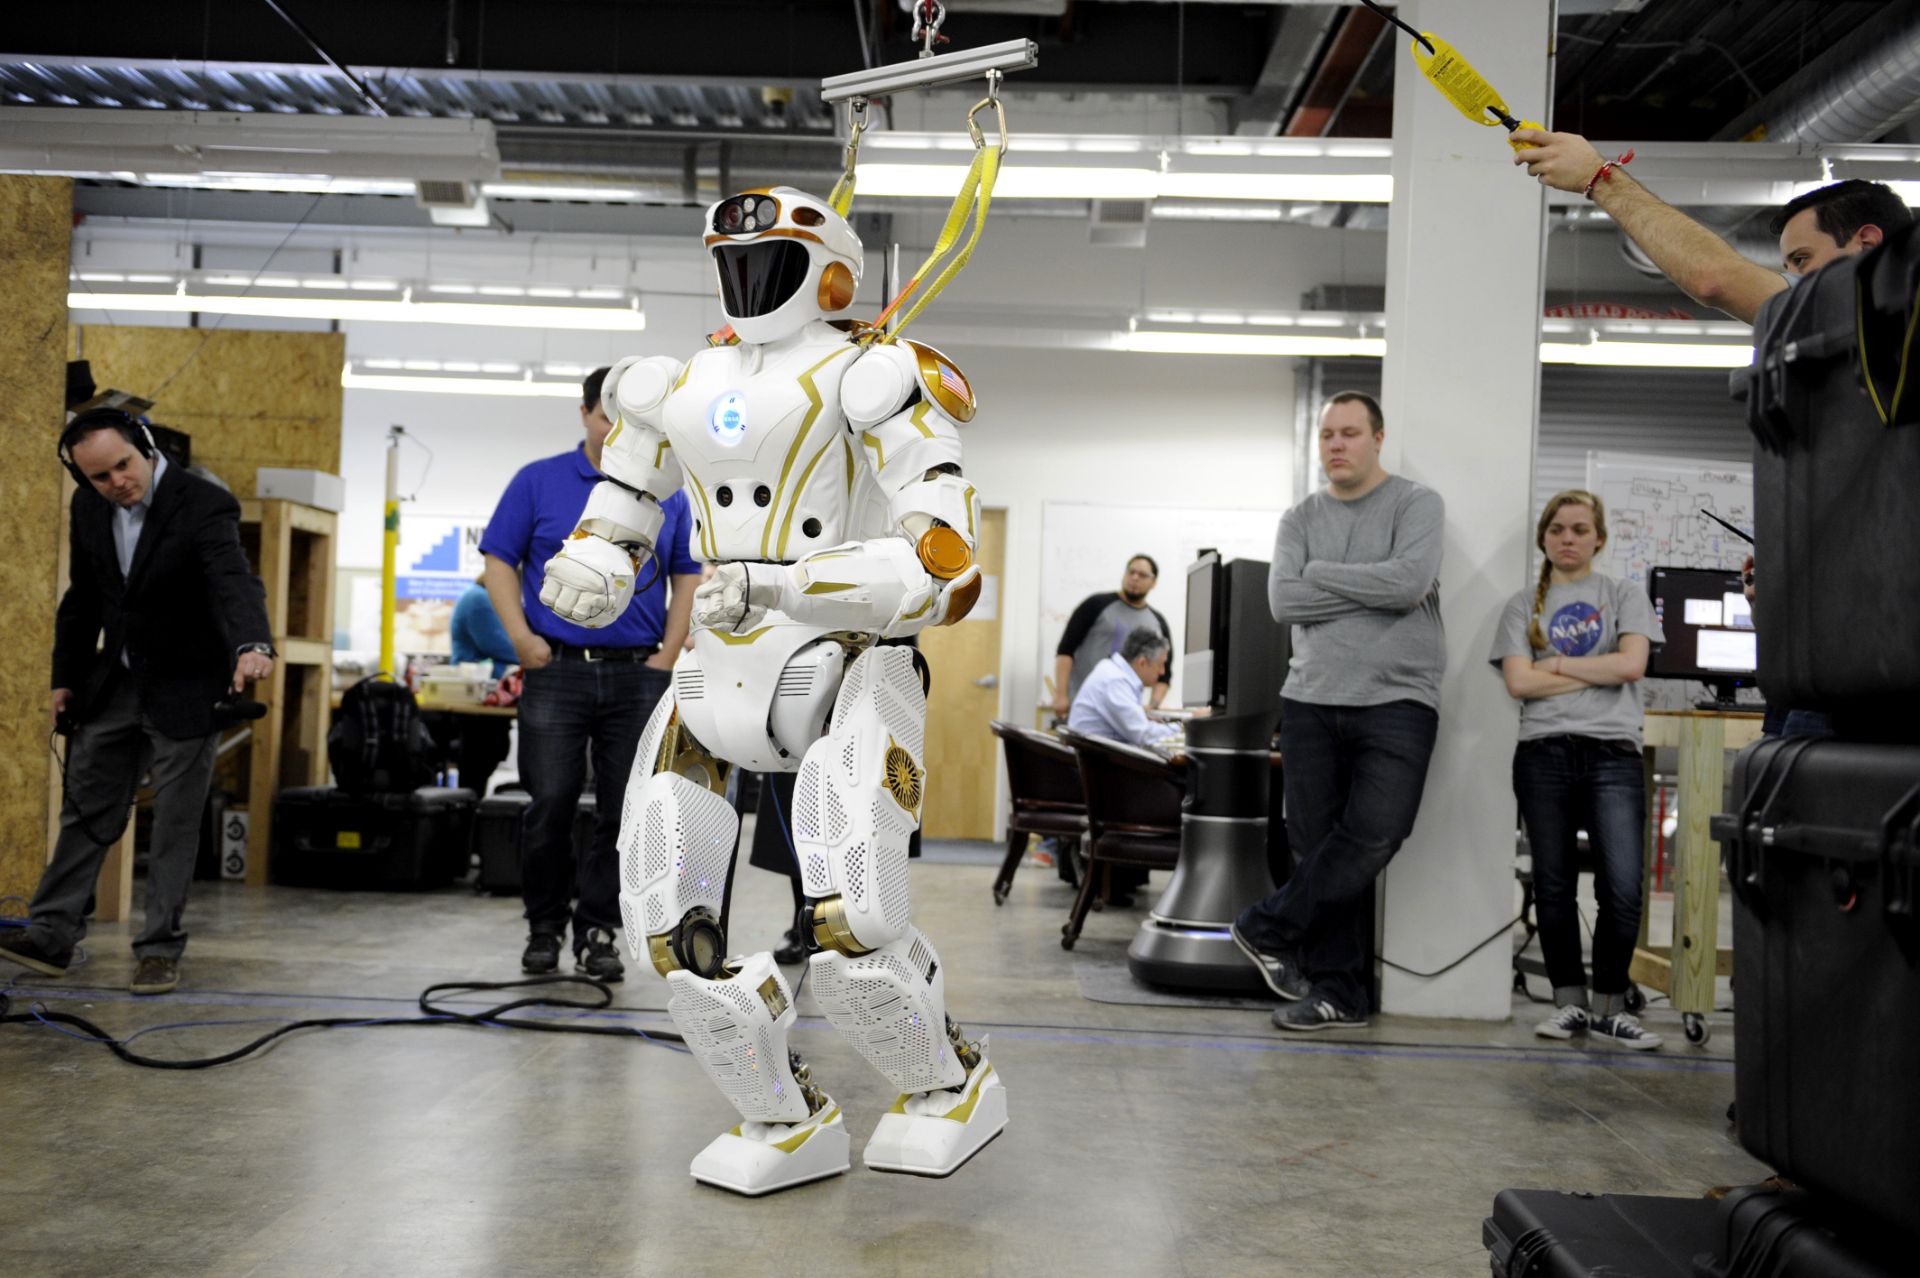 ربات والکری ناسا درحال راه رفتن میان کارکنان